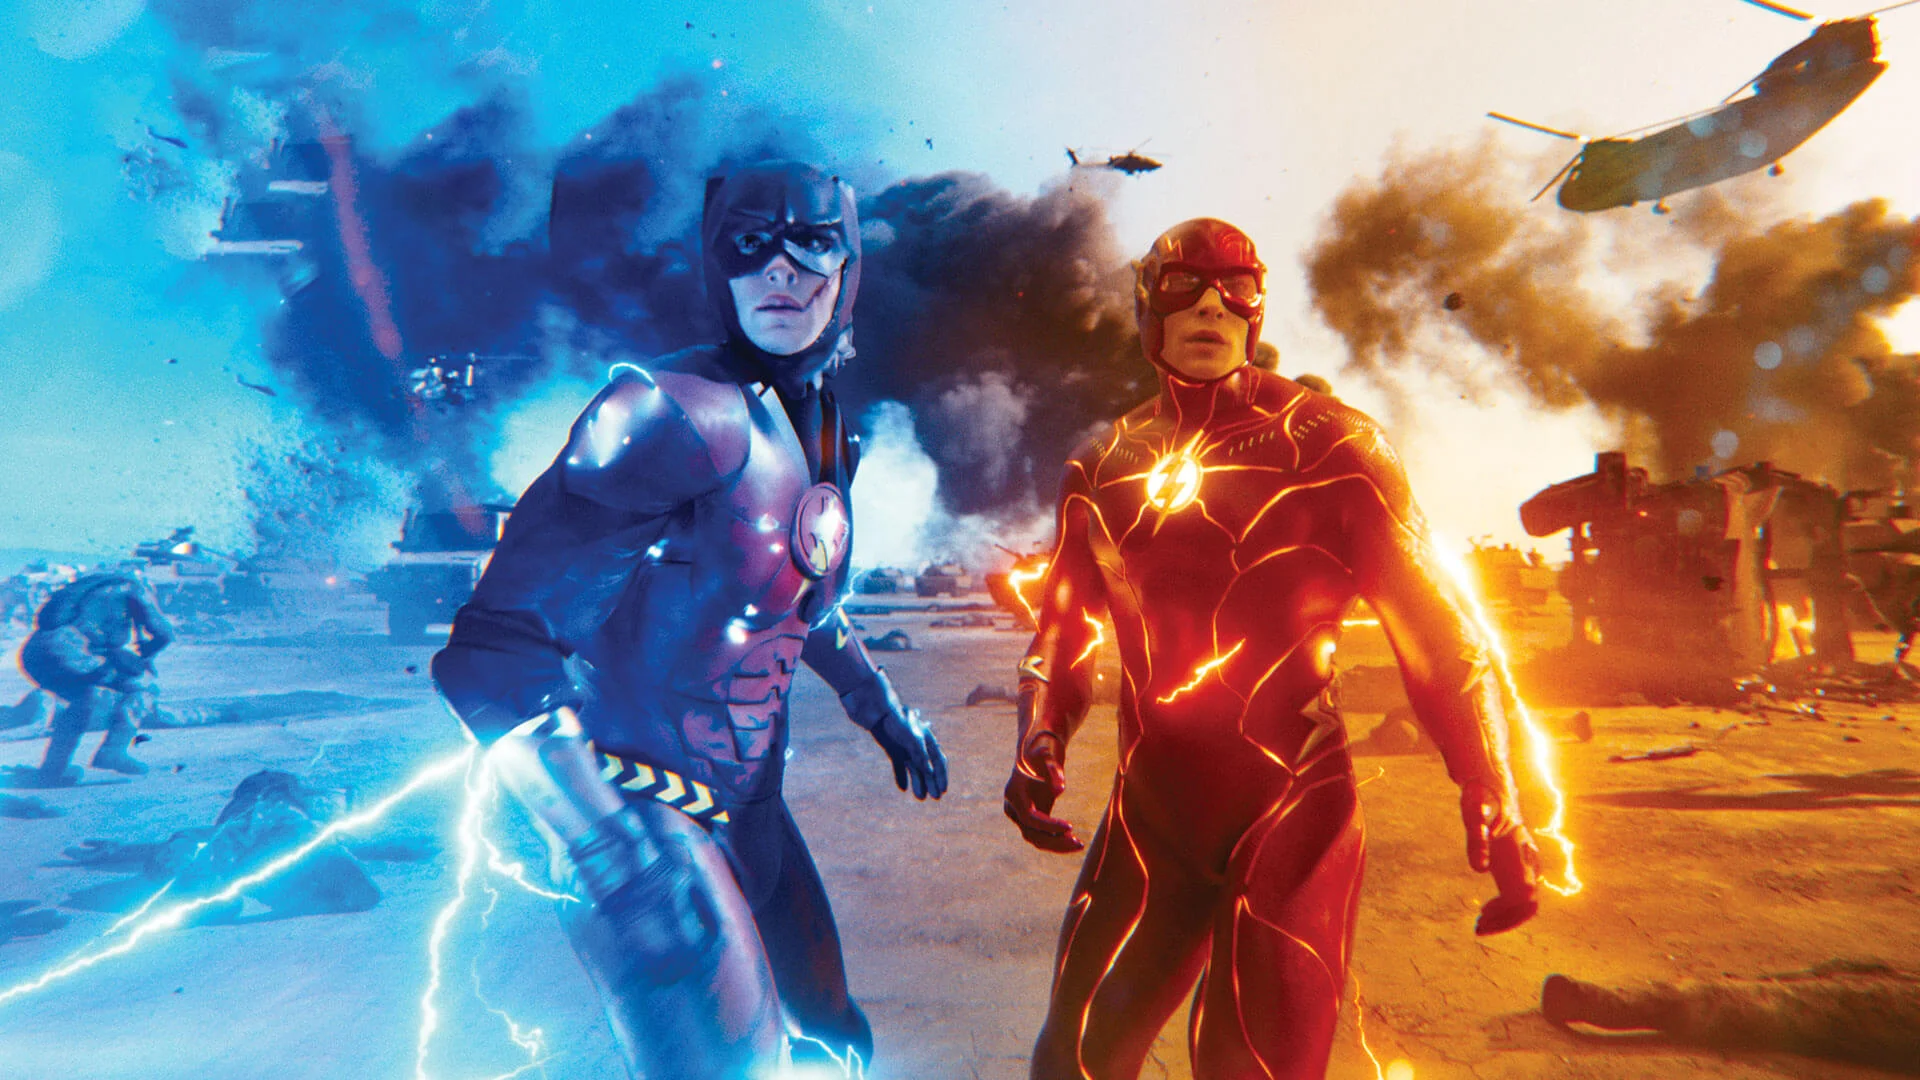 A Flash: A Villám utolsó nagy előzetese az akcióra, a poénokra és a karakterekre épít